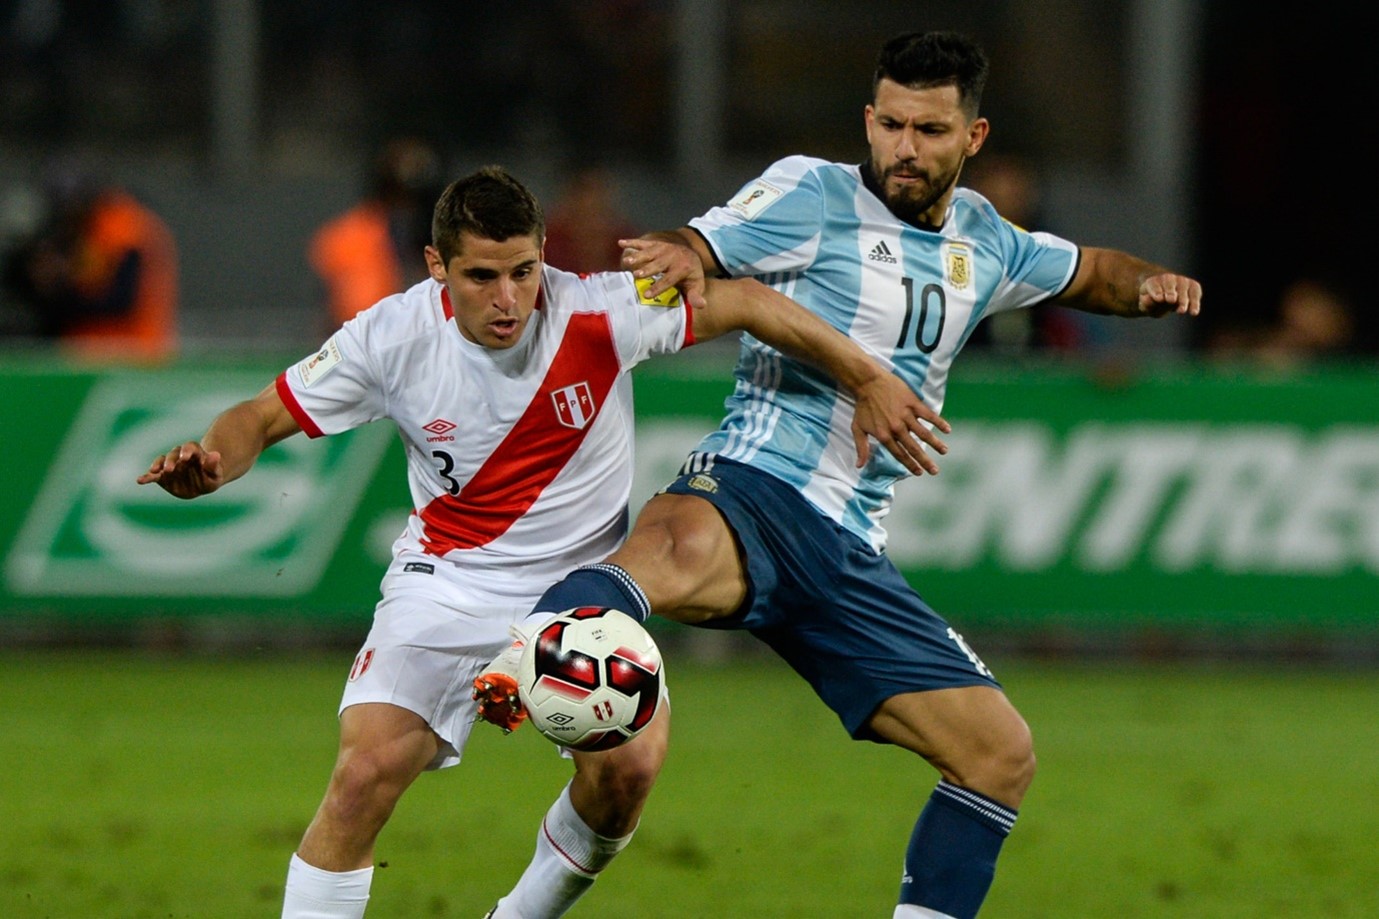 Peru vs Argentina